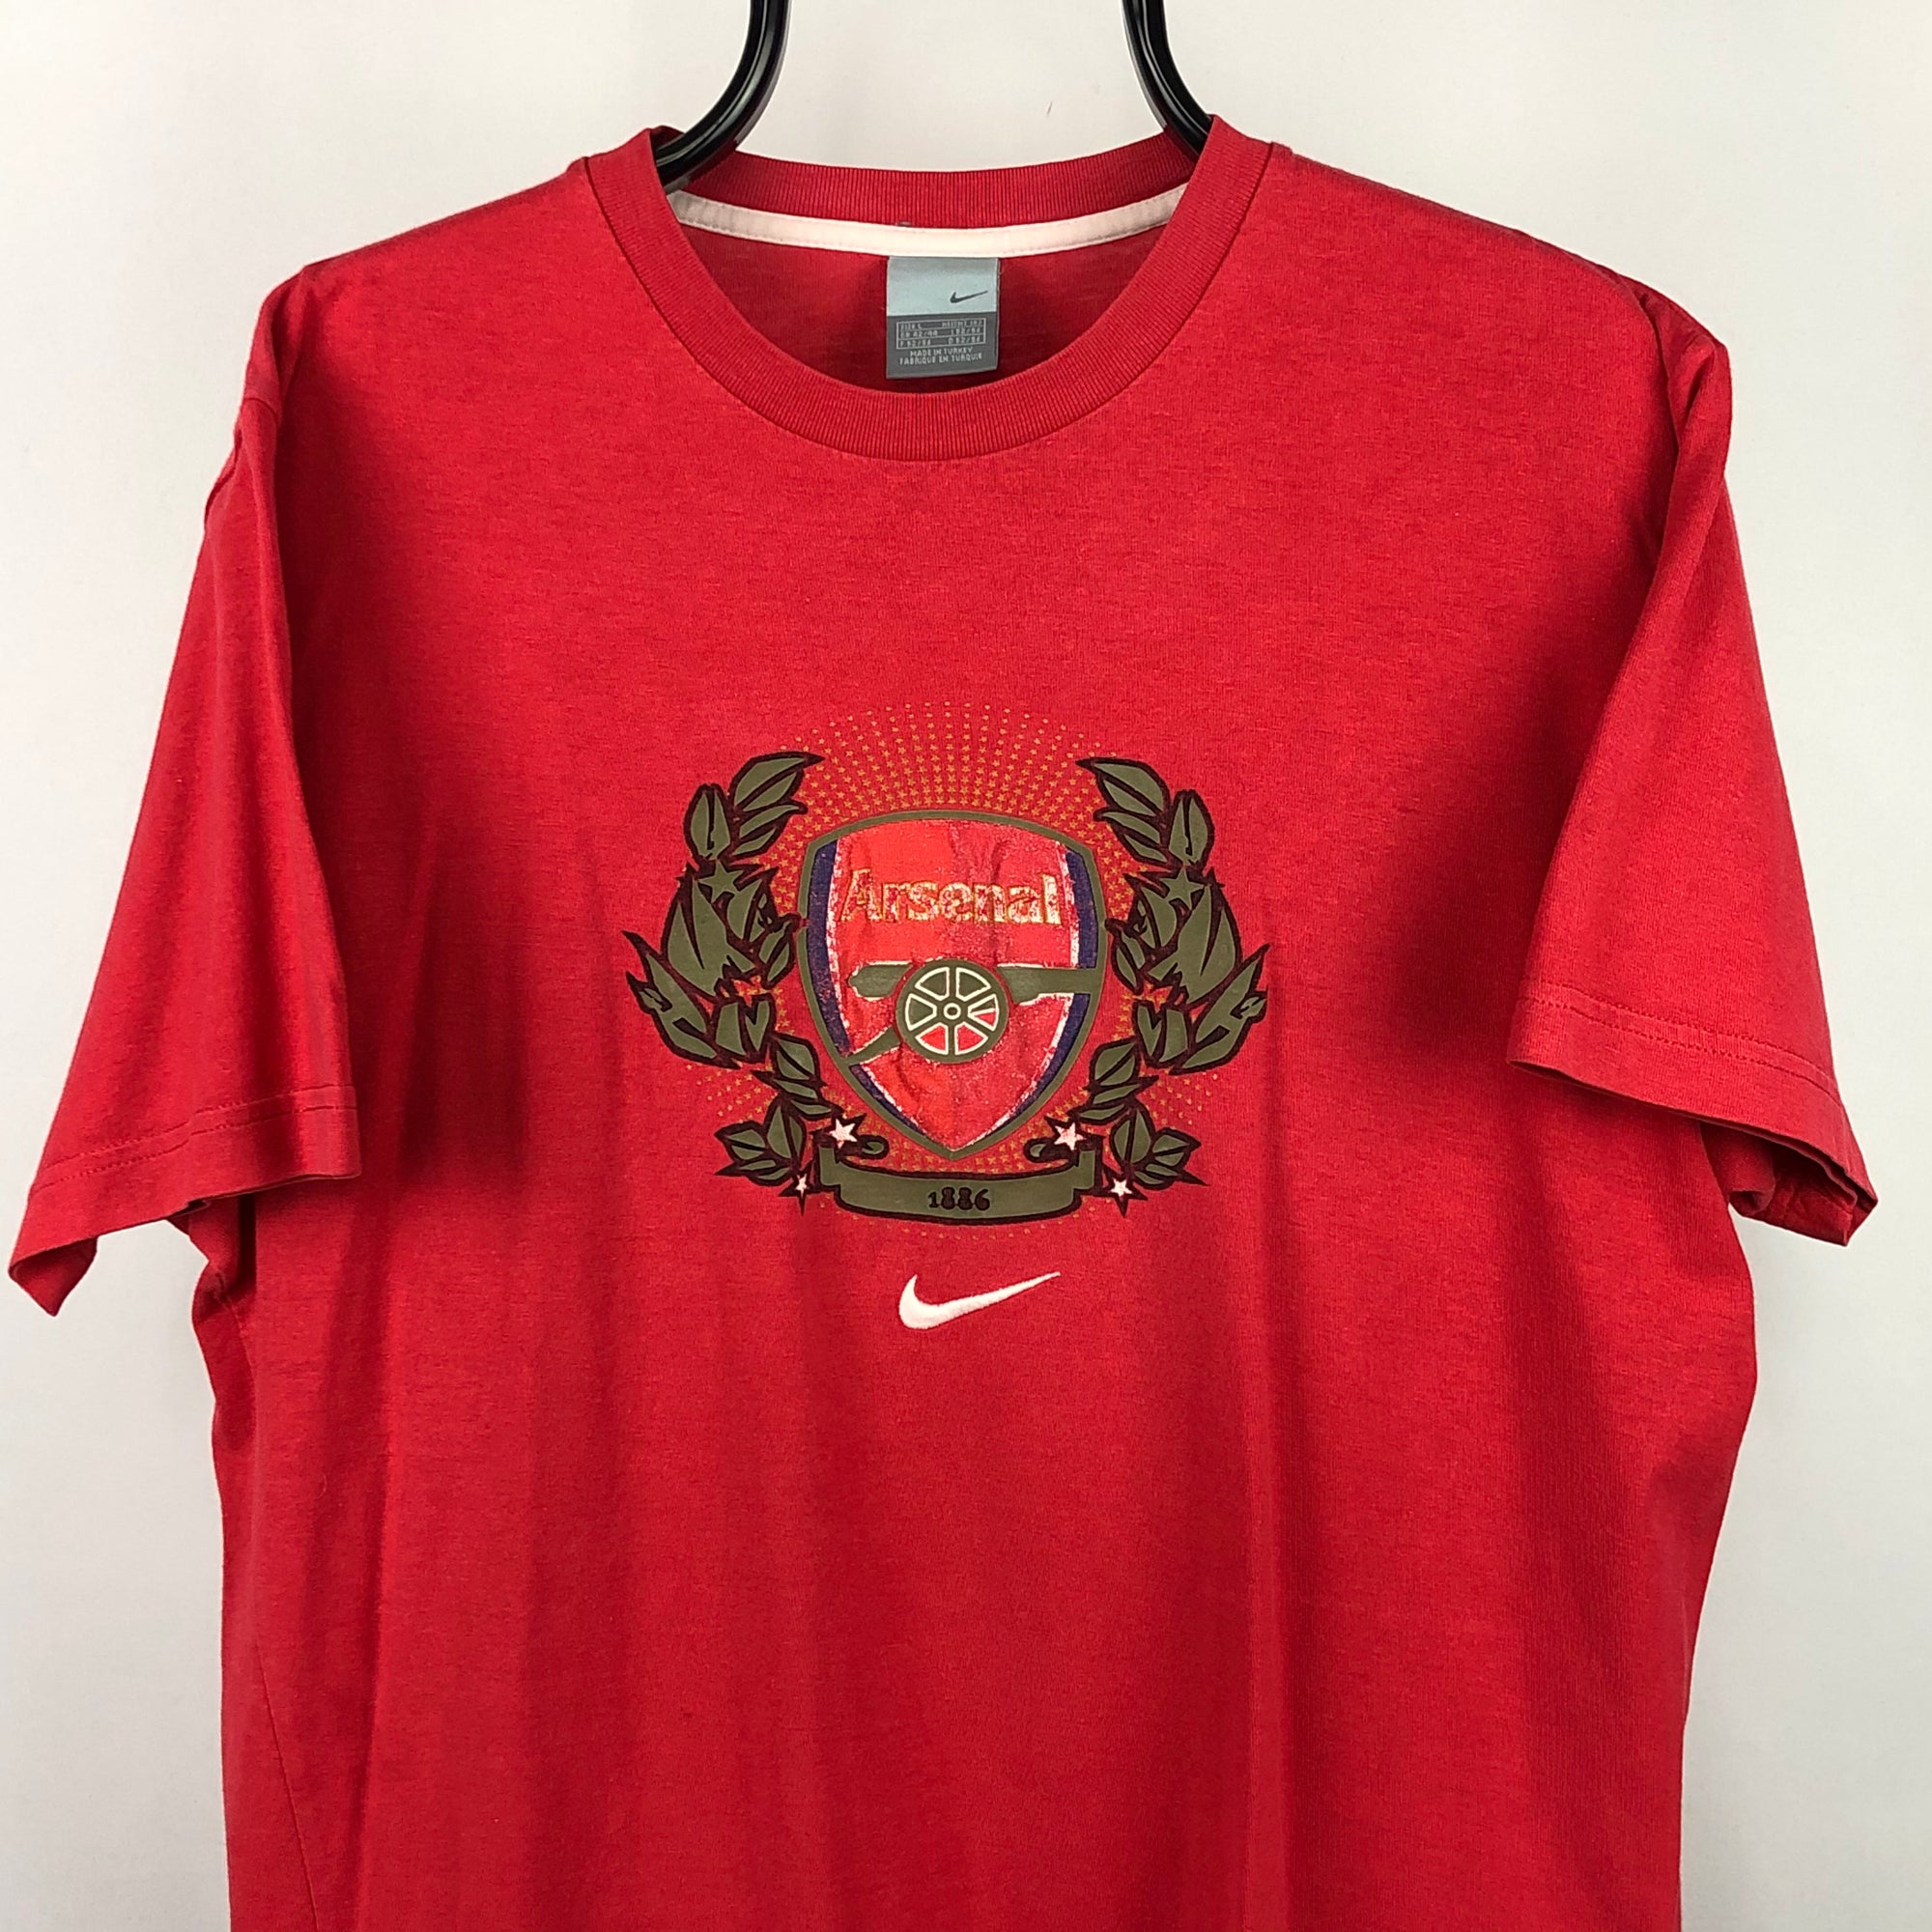 Vintage Nike Arsenal FC Tee - Men's Medium/Women's Large